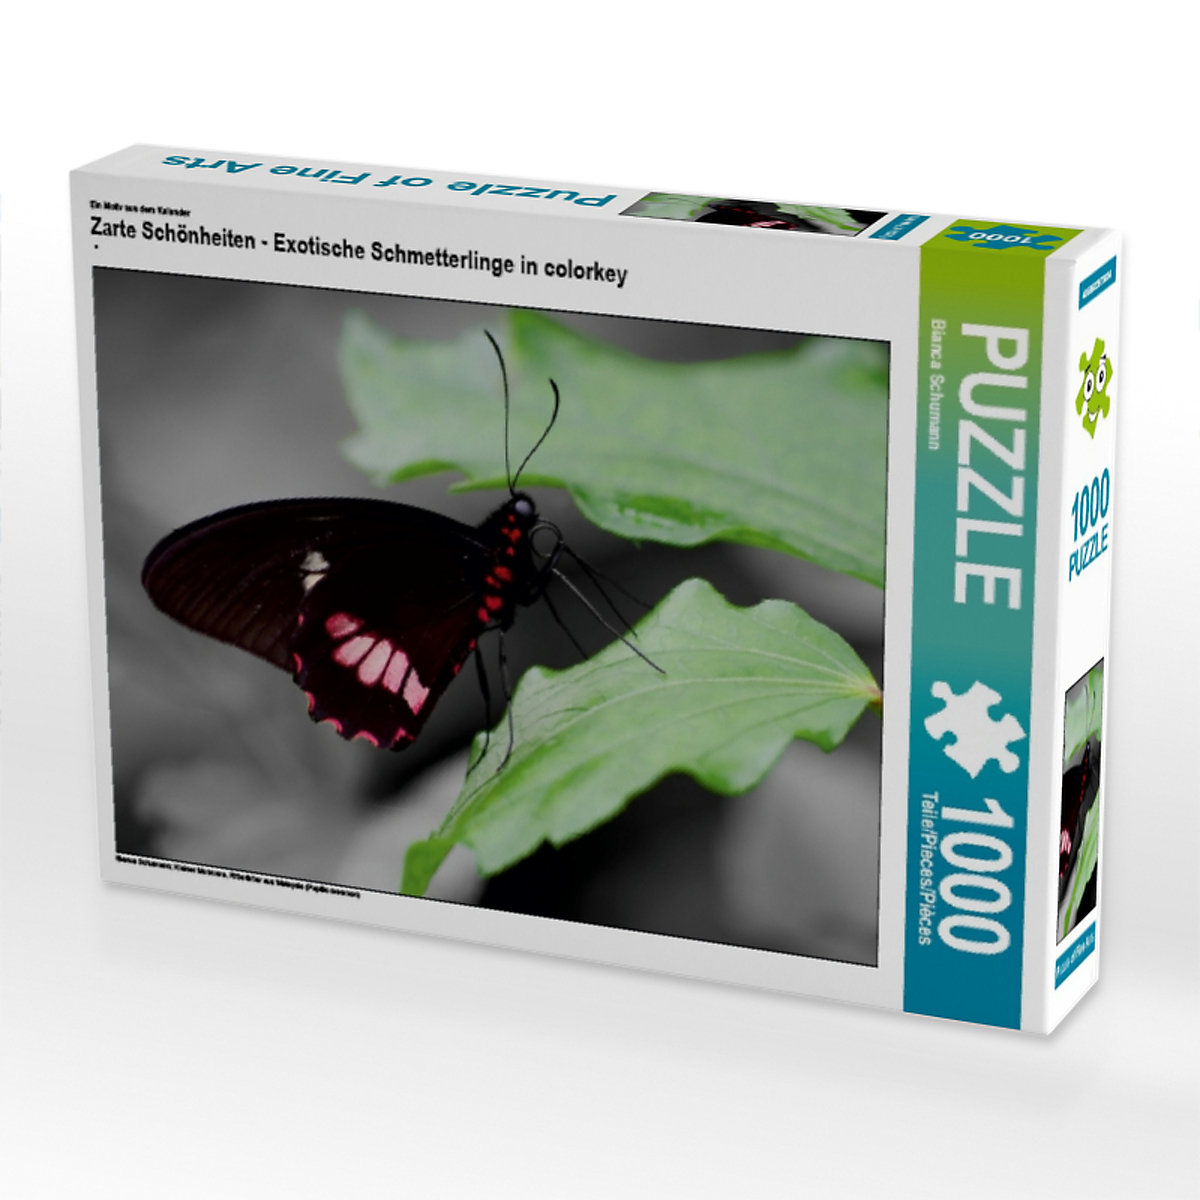 CALVENDO® Puzzle CALVENDO Puzzle Zarte Schönheiten Exotische Schmetterlinge in colorkey 1000 Teile Foto-Puzzle für glückliche Stunden